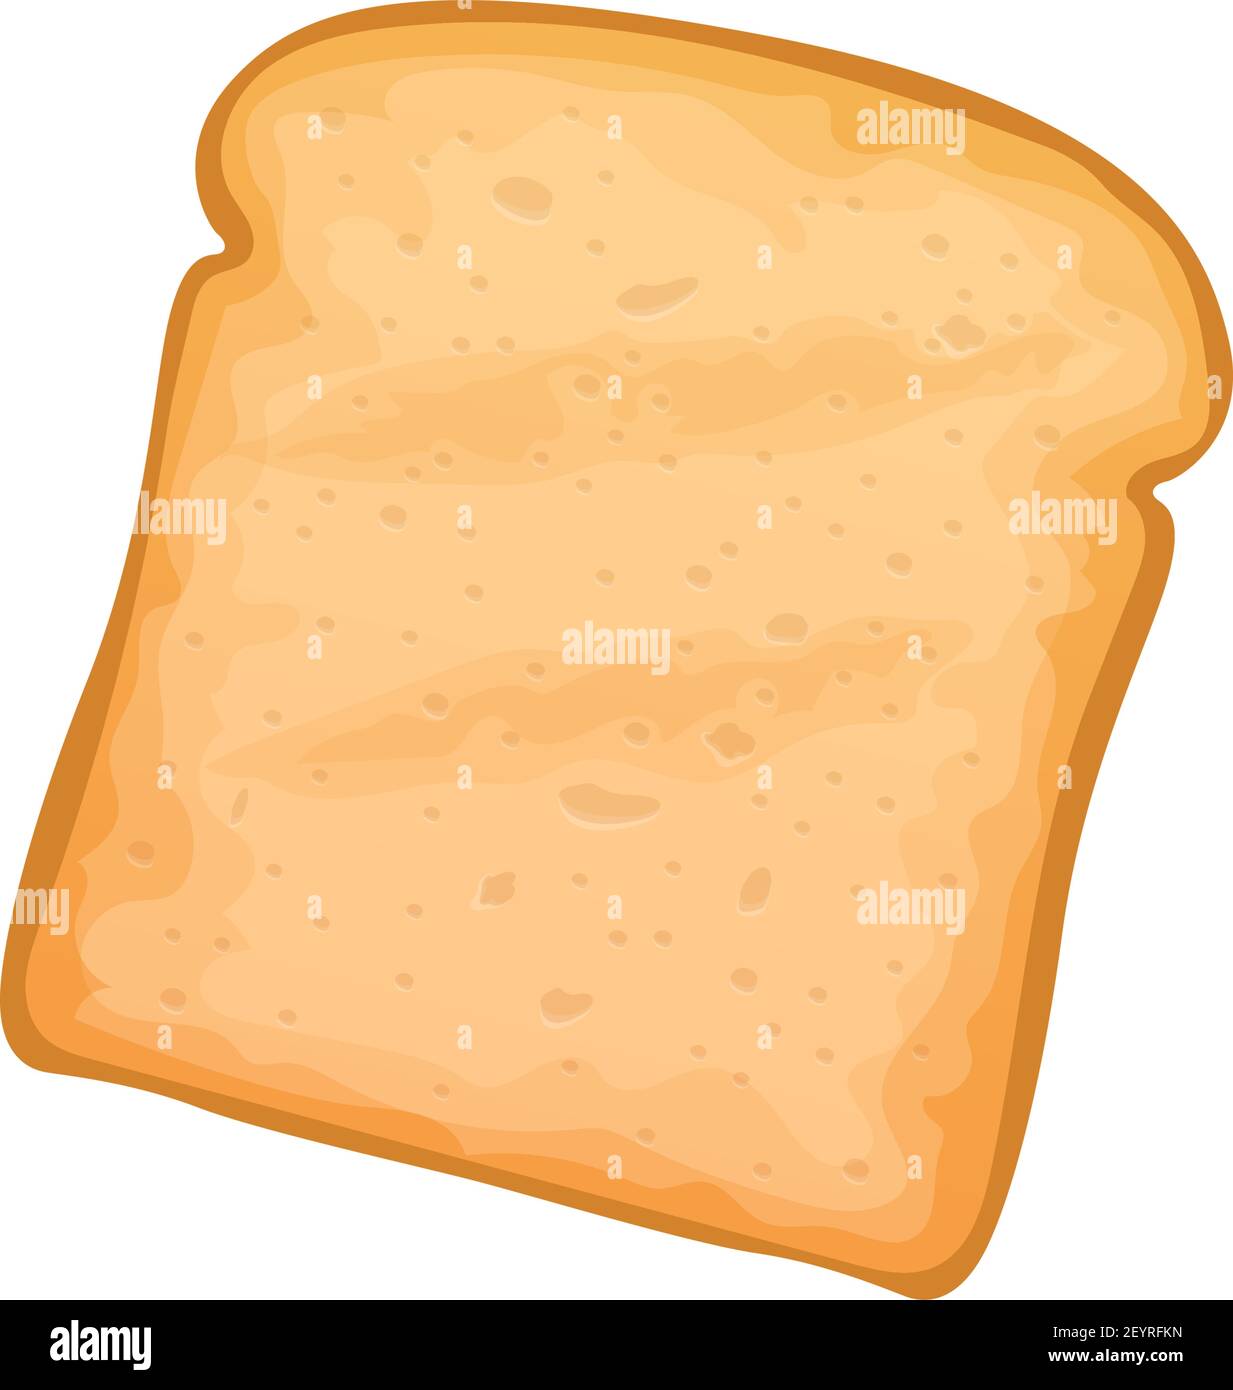 Pezzo isolato di pane tostato. Crostata torrefatta vettoriale, fetta o pane di panificio sandwich Illustrazione Vettoriale